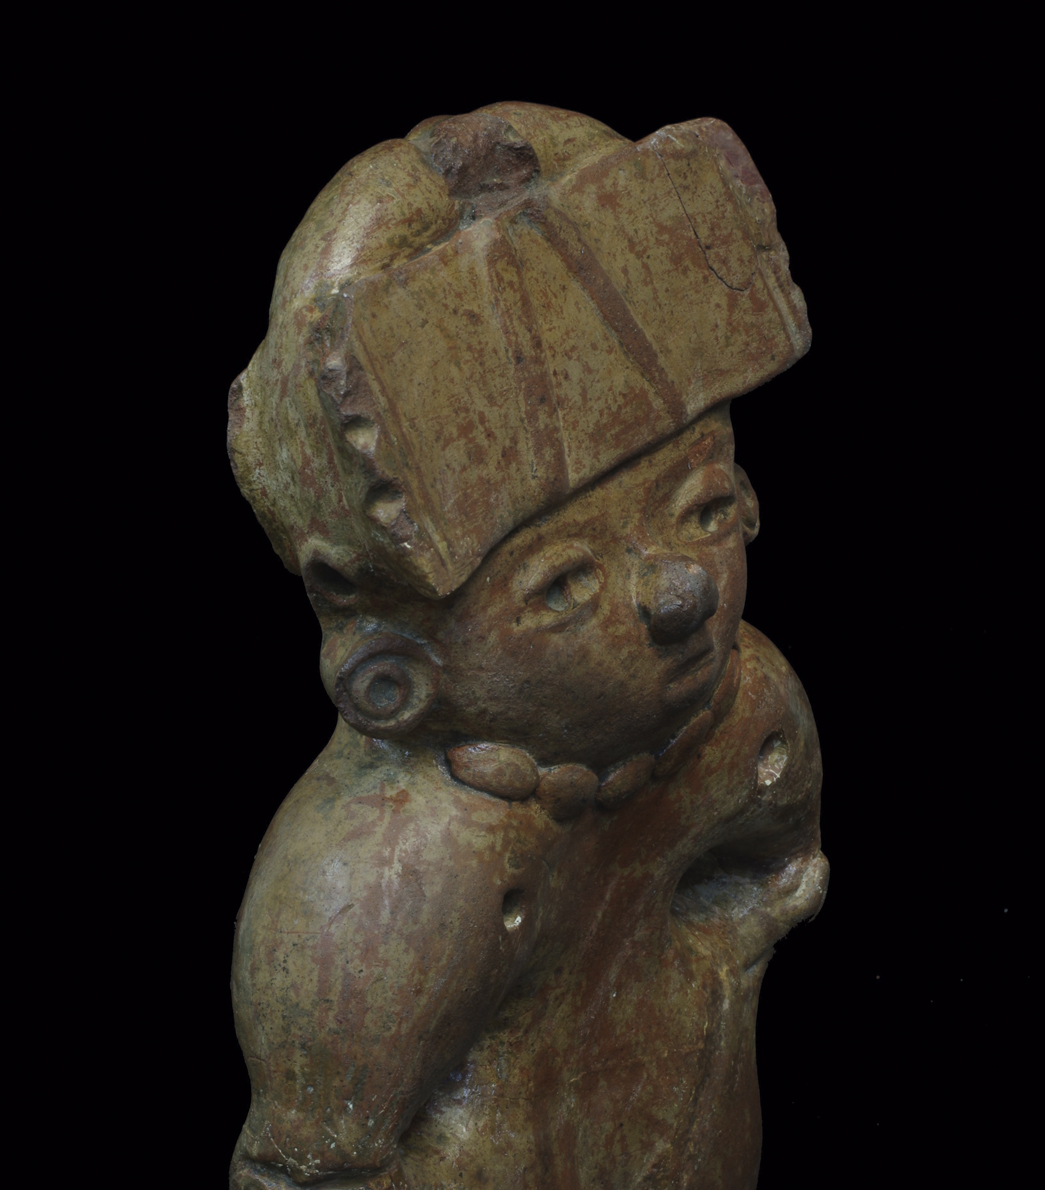 Modelado del cráneo en Mesoamérica. Emblemática costumbre